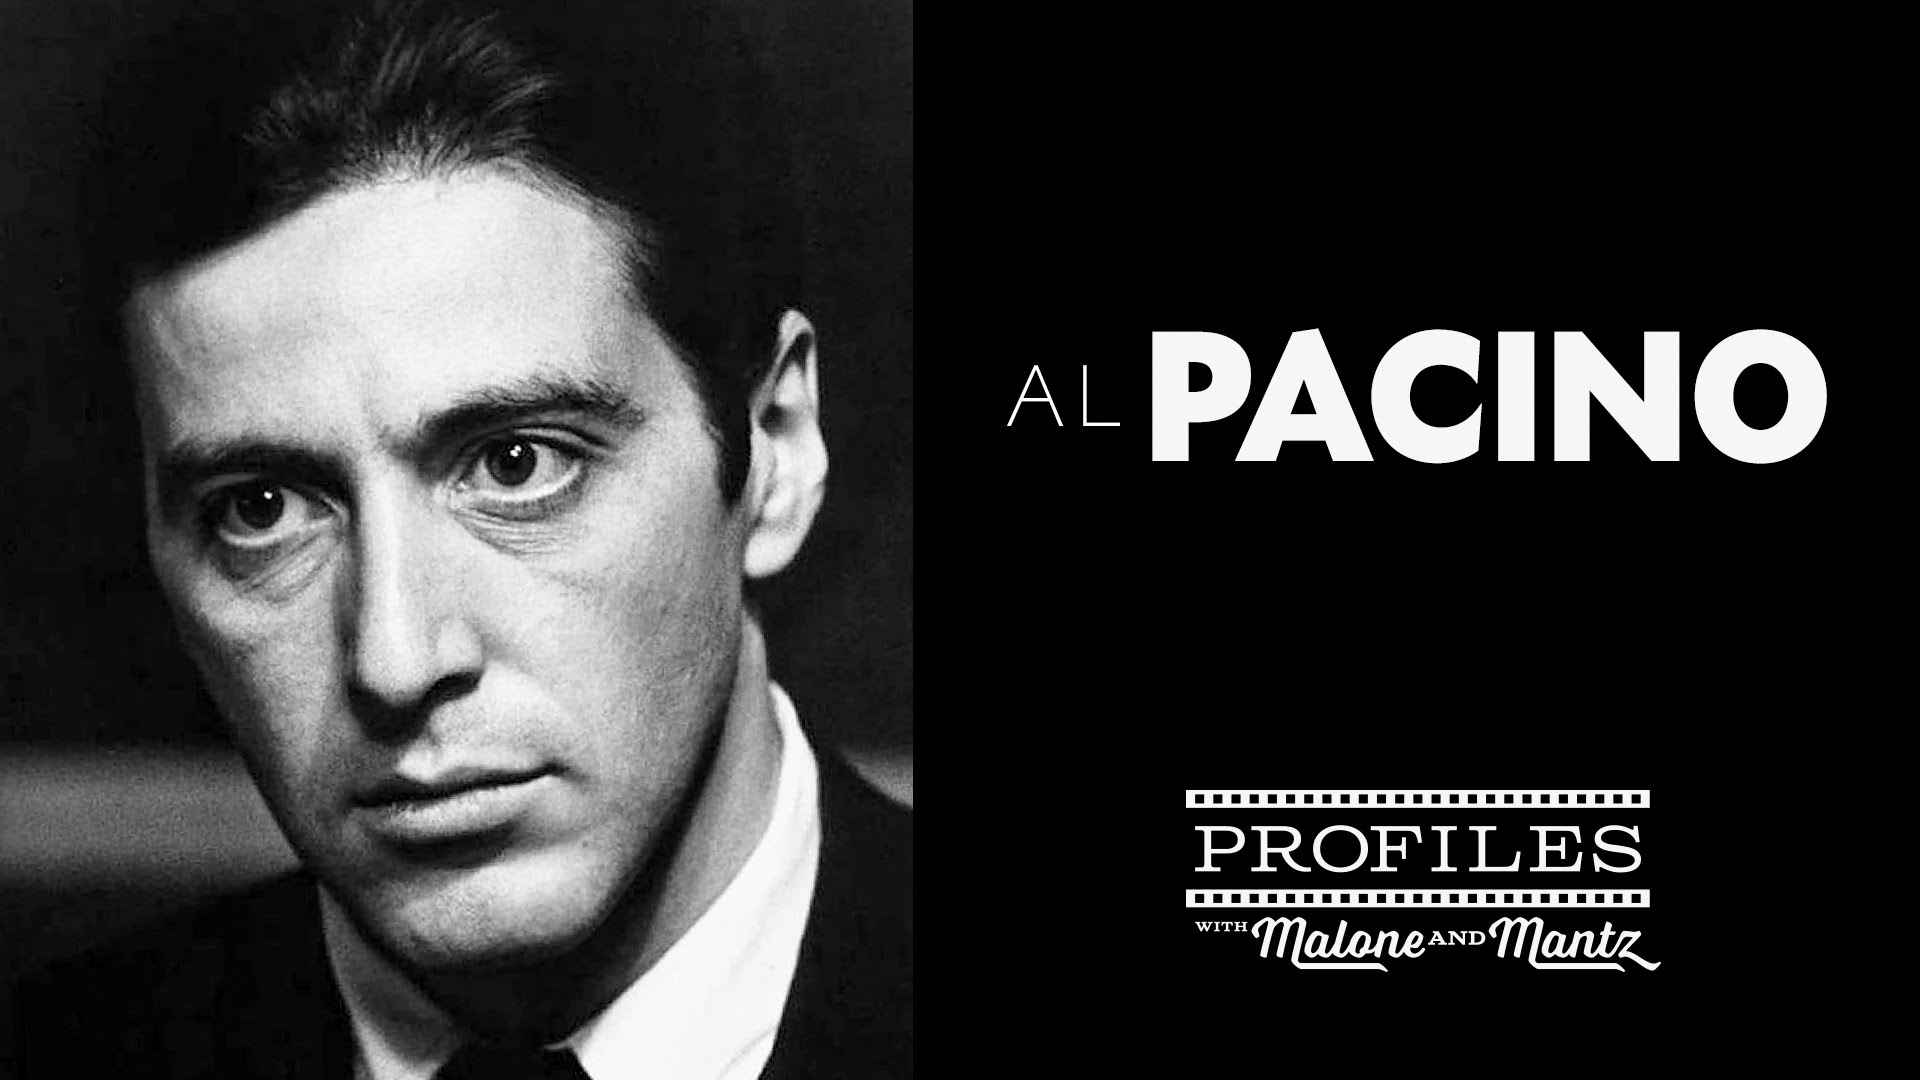 Al Pacino Backgrounds, Compatible - PC, Mobile, Gadgets| 1920x1080 px